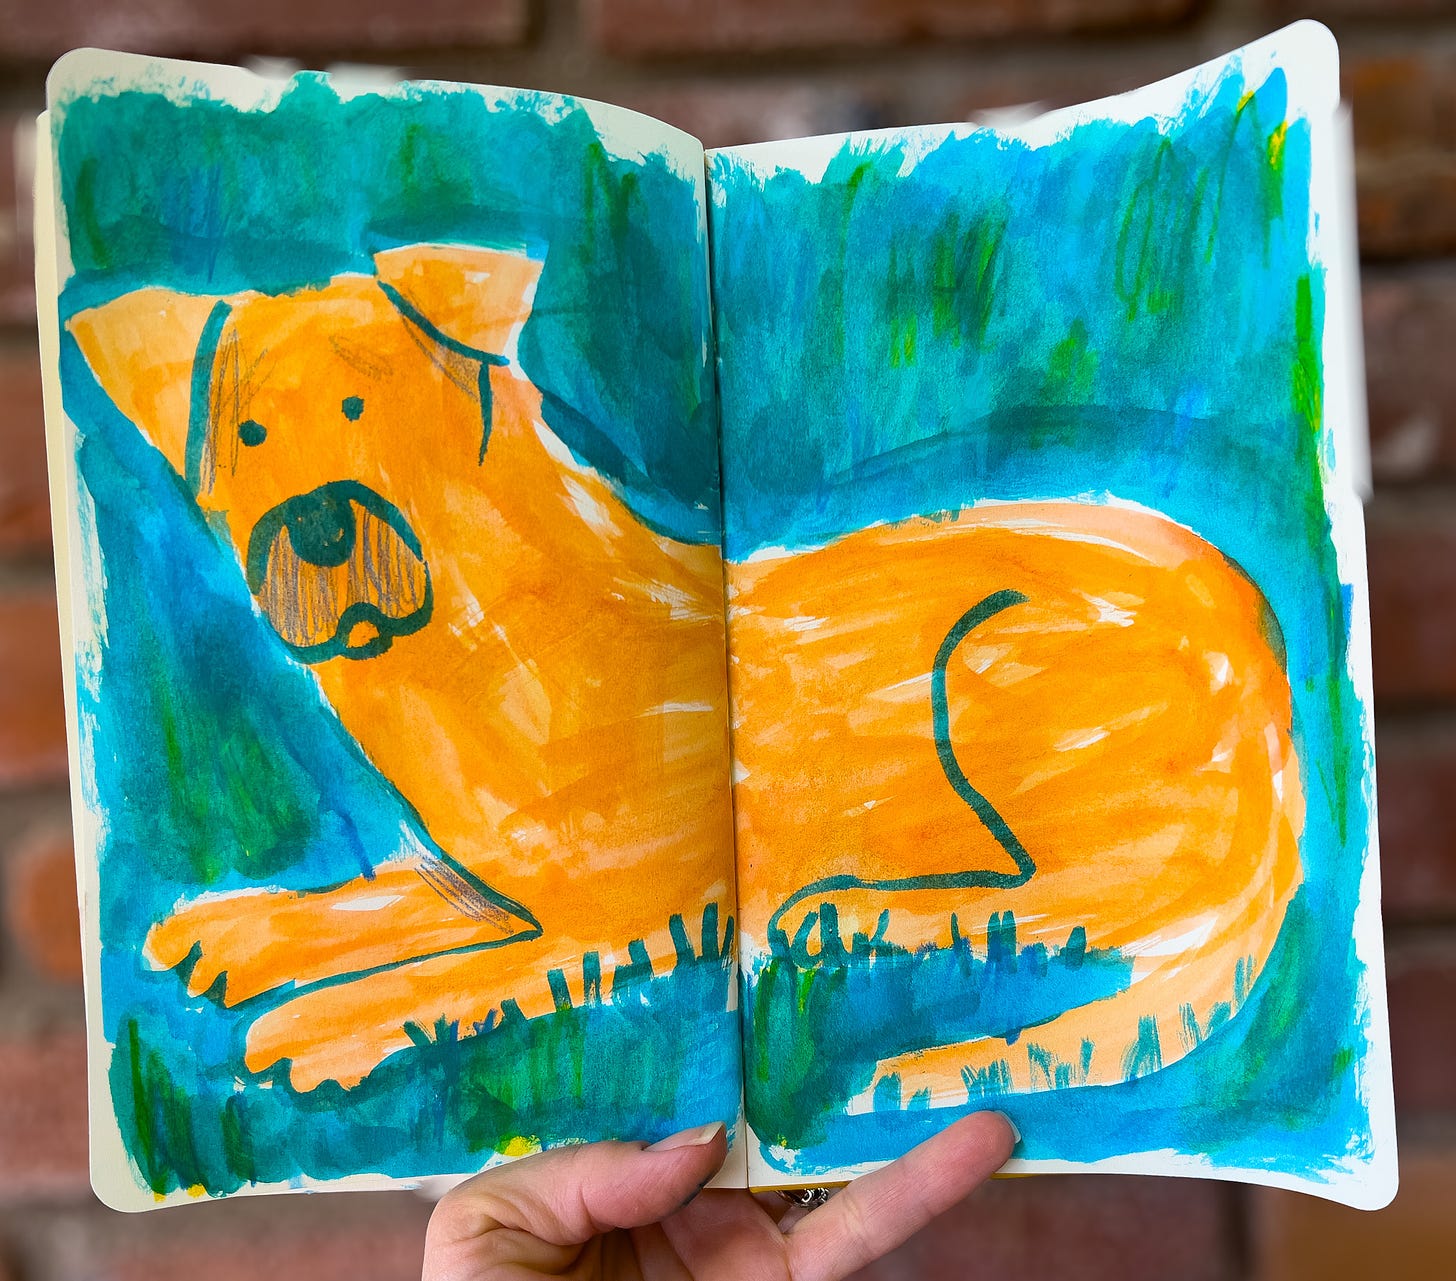 sketchbook illustration of an orange dog by Beth Spencer